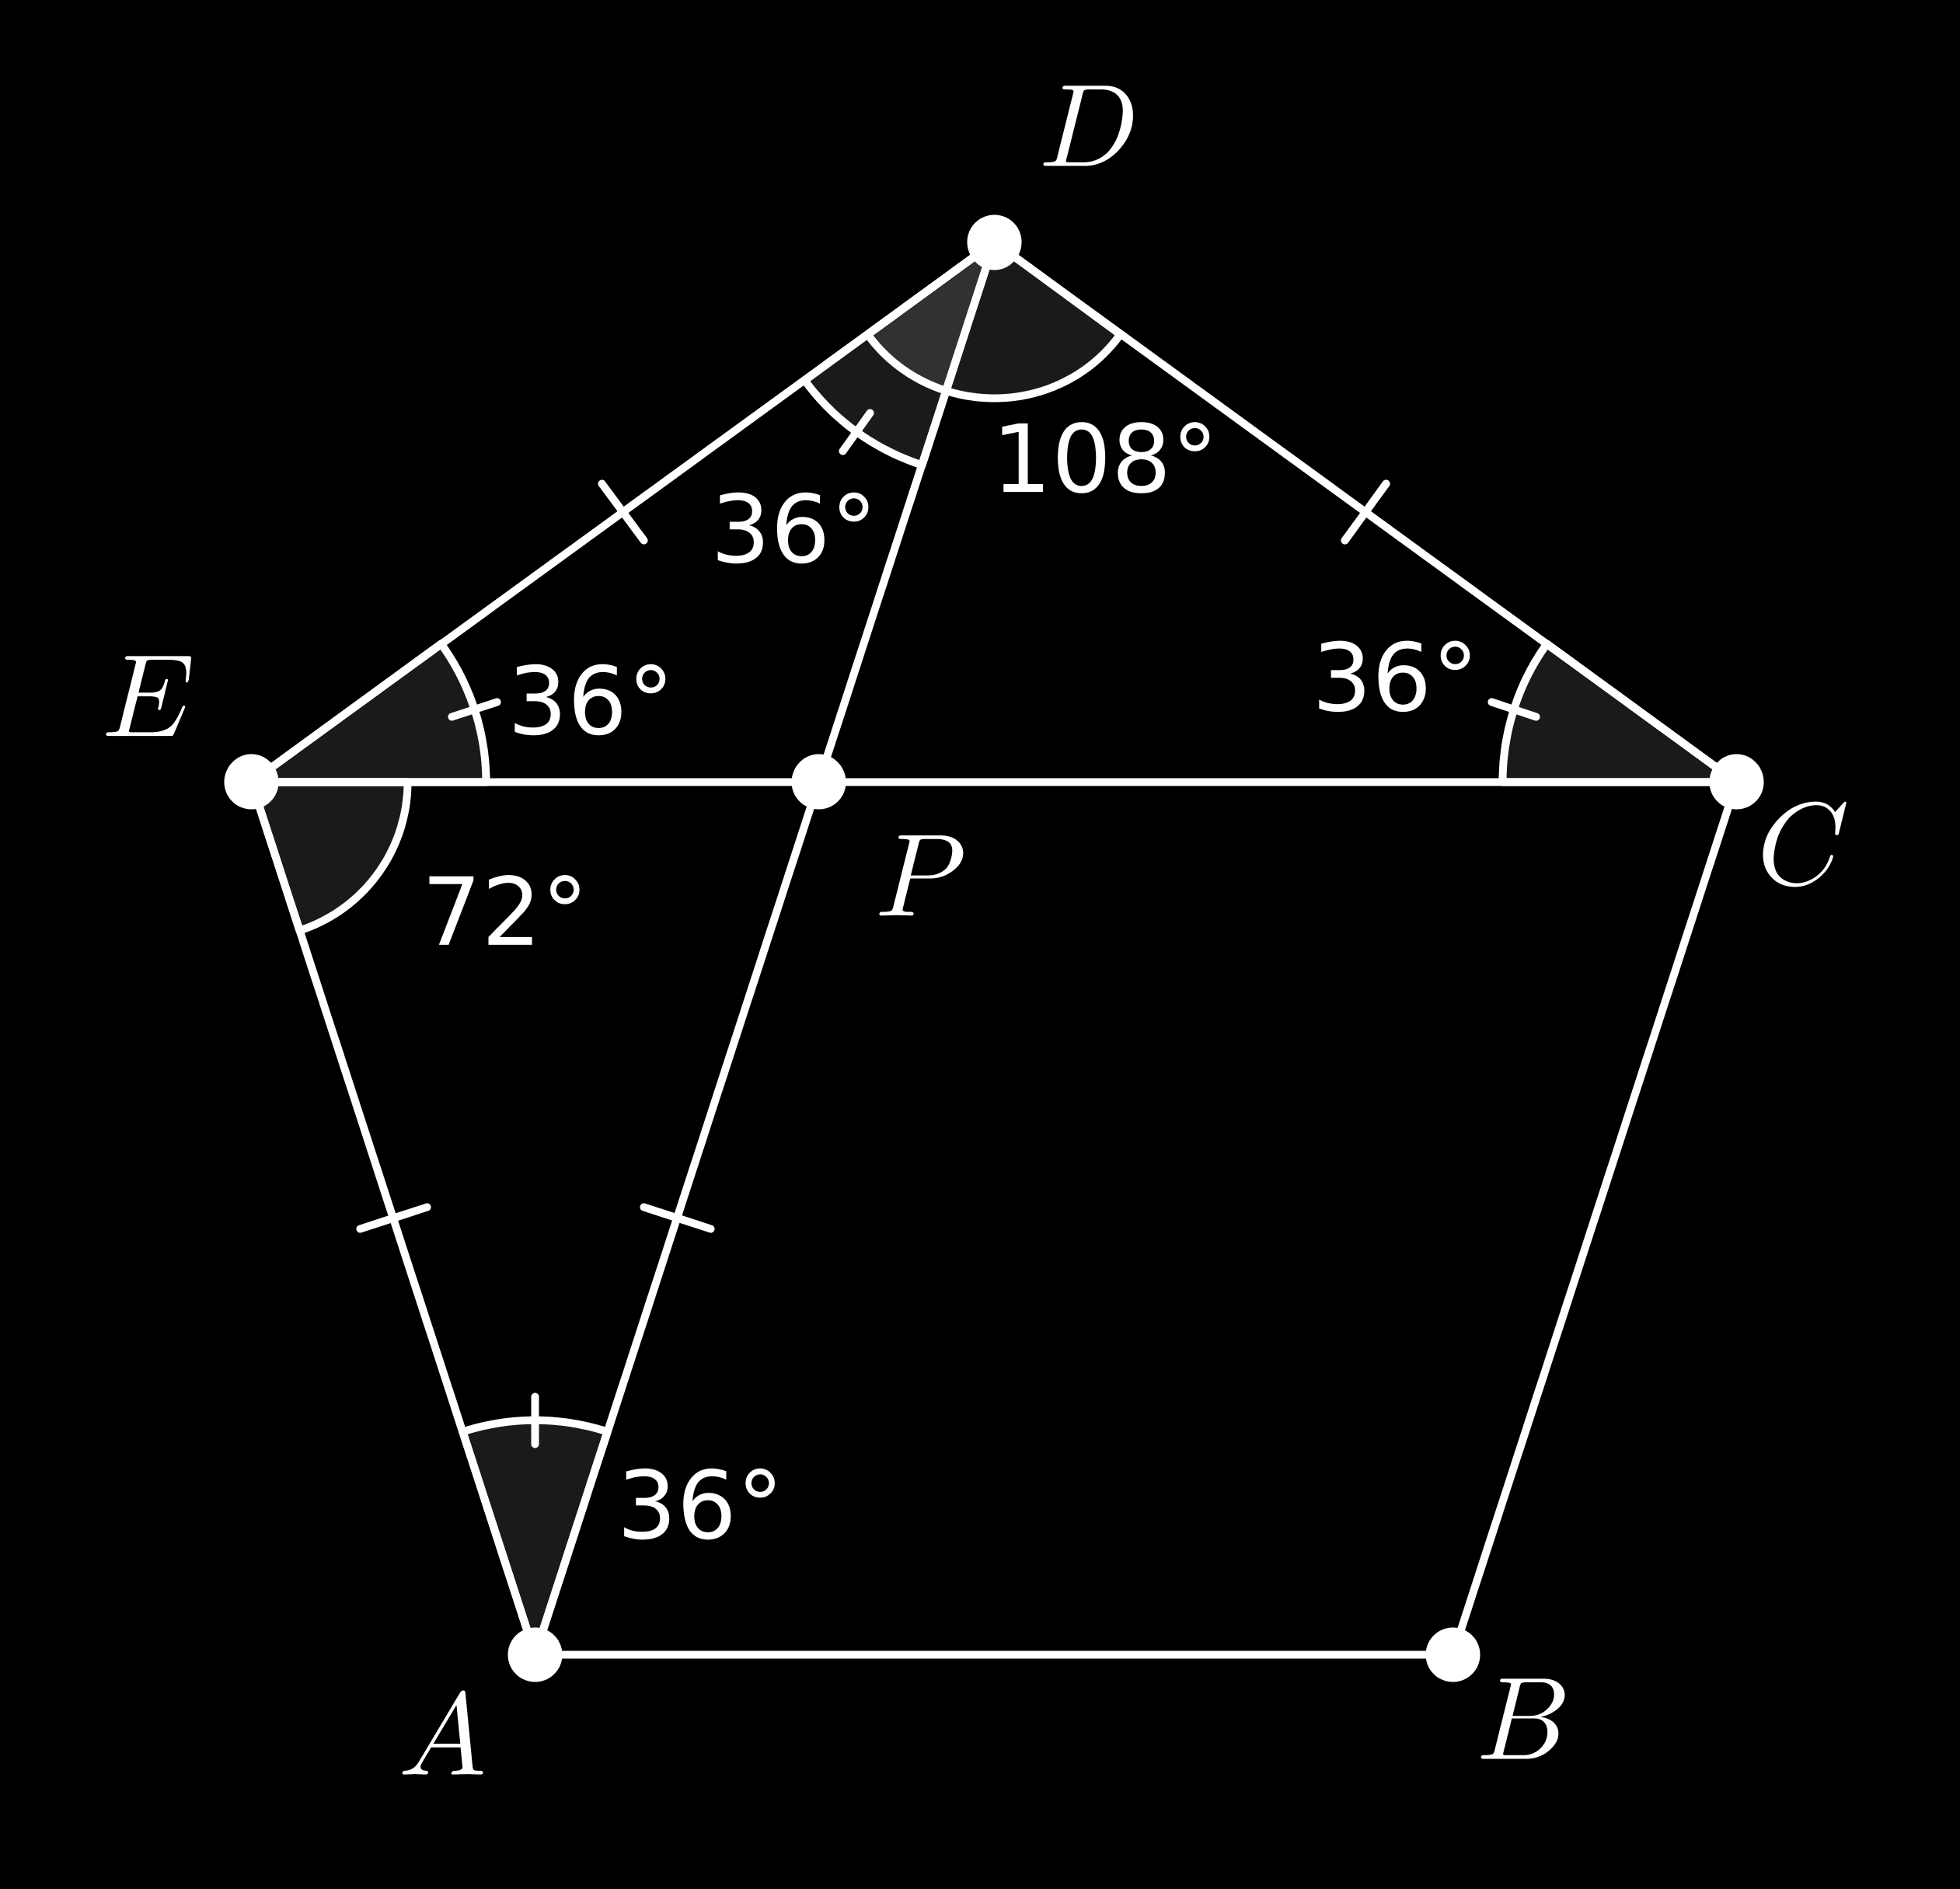 Como os triângulos CDE e DEA são congruentes (LAL), temos também DÂE = A ˆDE = 36. Como EÂP = 36 e P ÊA = 108 36 = 7, temos que E ˆP A = 180 36 7 = 7, logo o triângulo EAP é isósceles de vértice A.